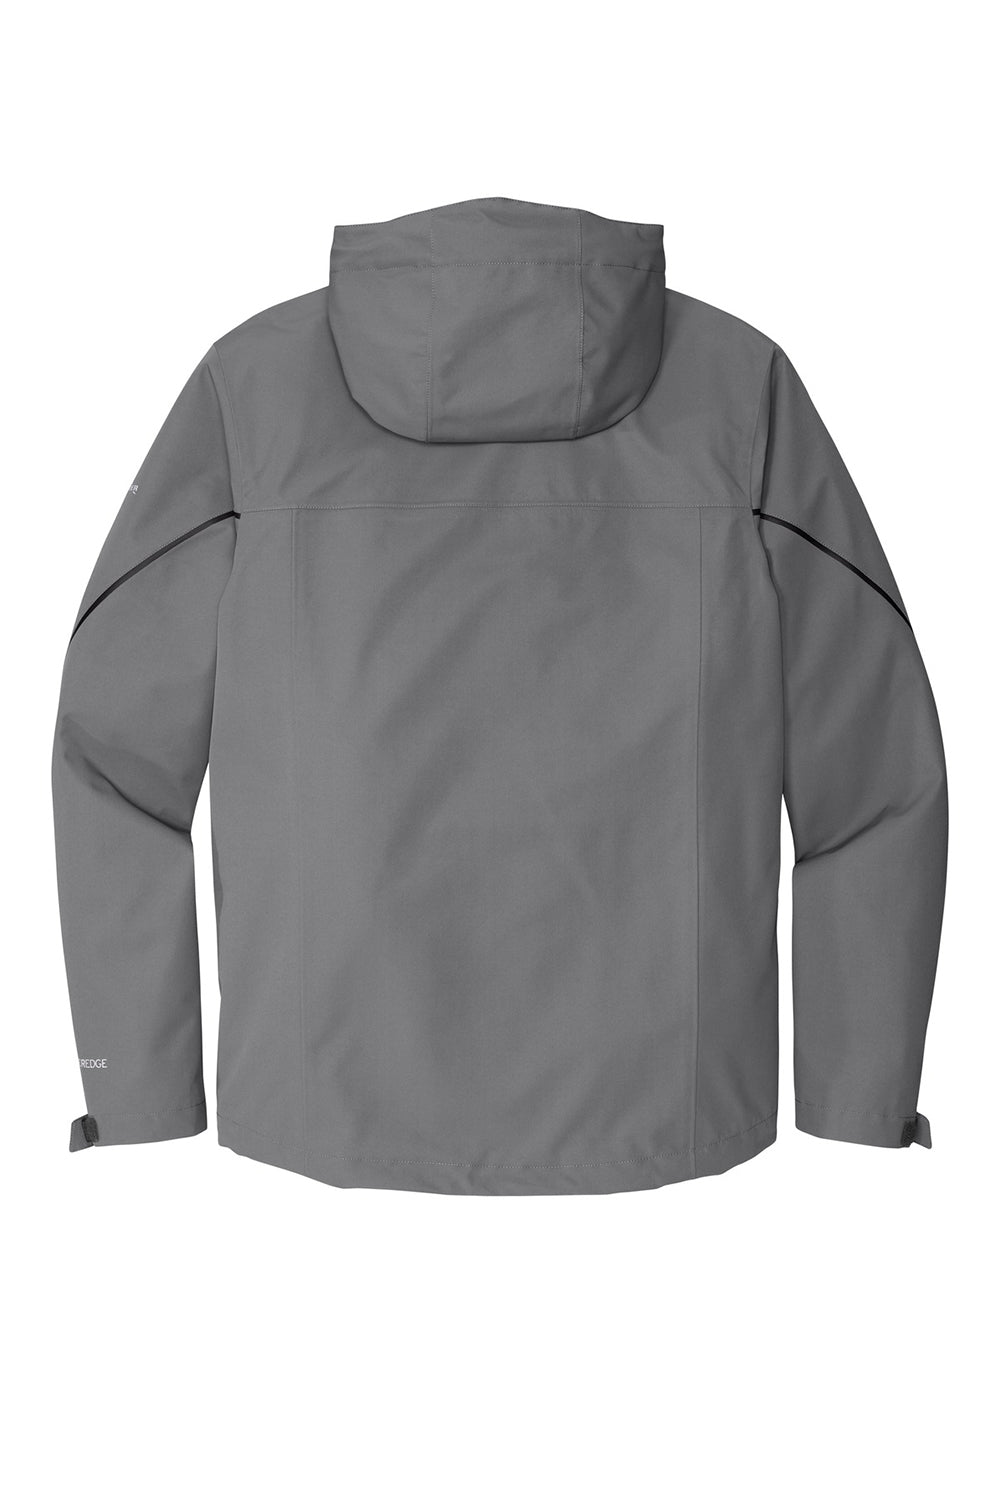 Eddie Bauer EB556 Mens WeatherEdge Plus 3-in-1 Waterproof Full Zip Hooded Jacket Metal Grey Flat Back